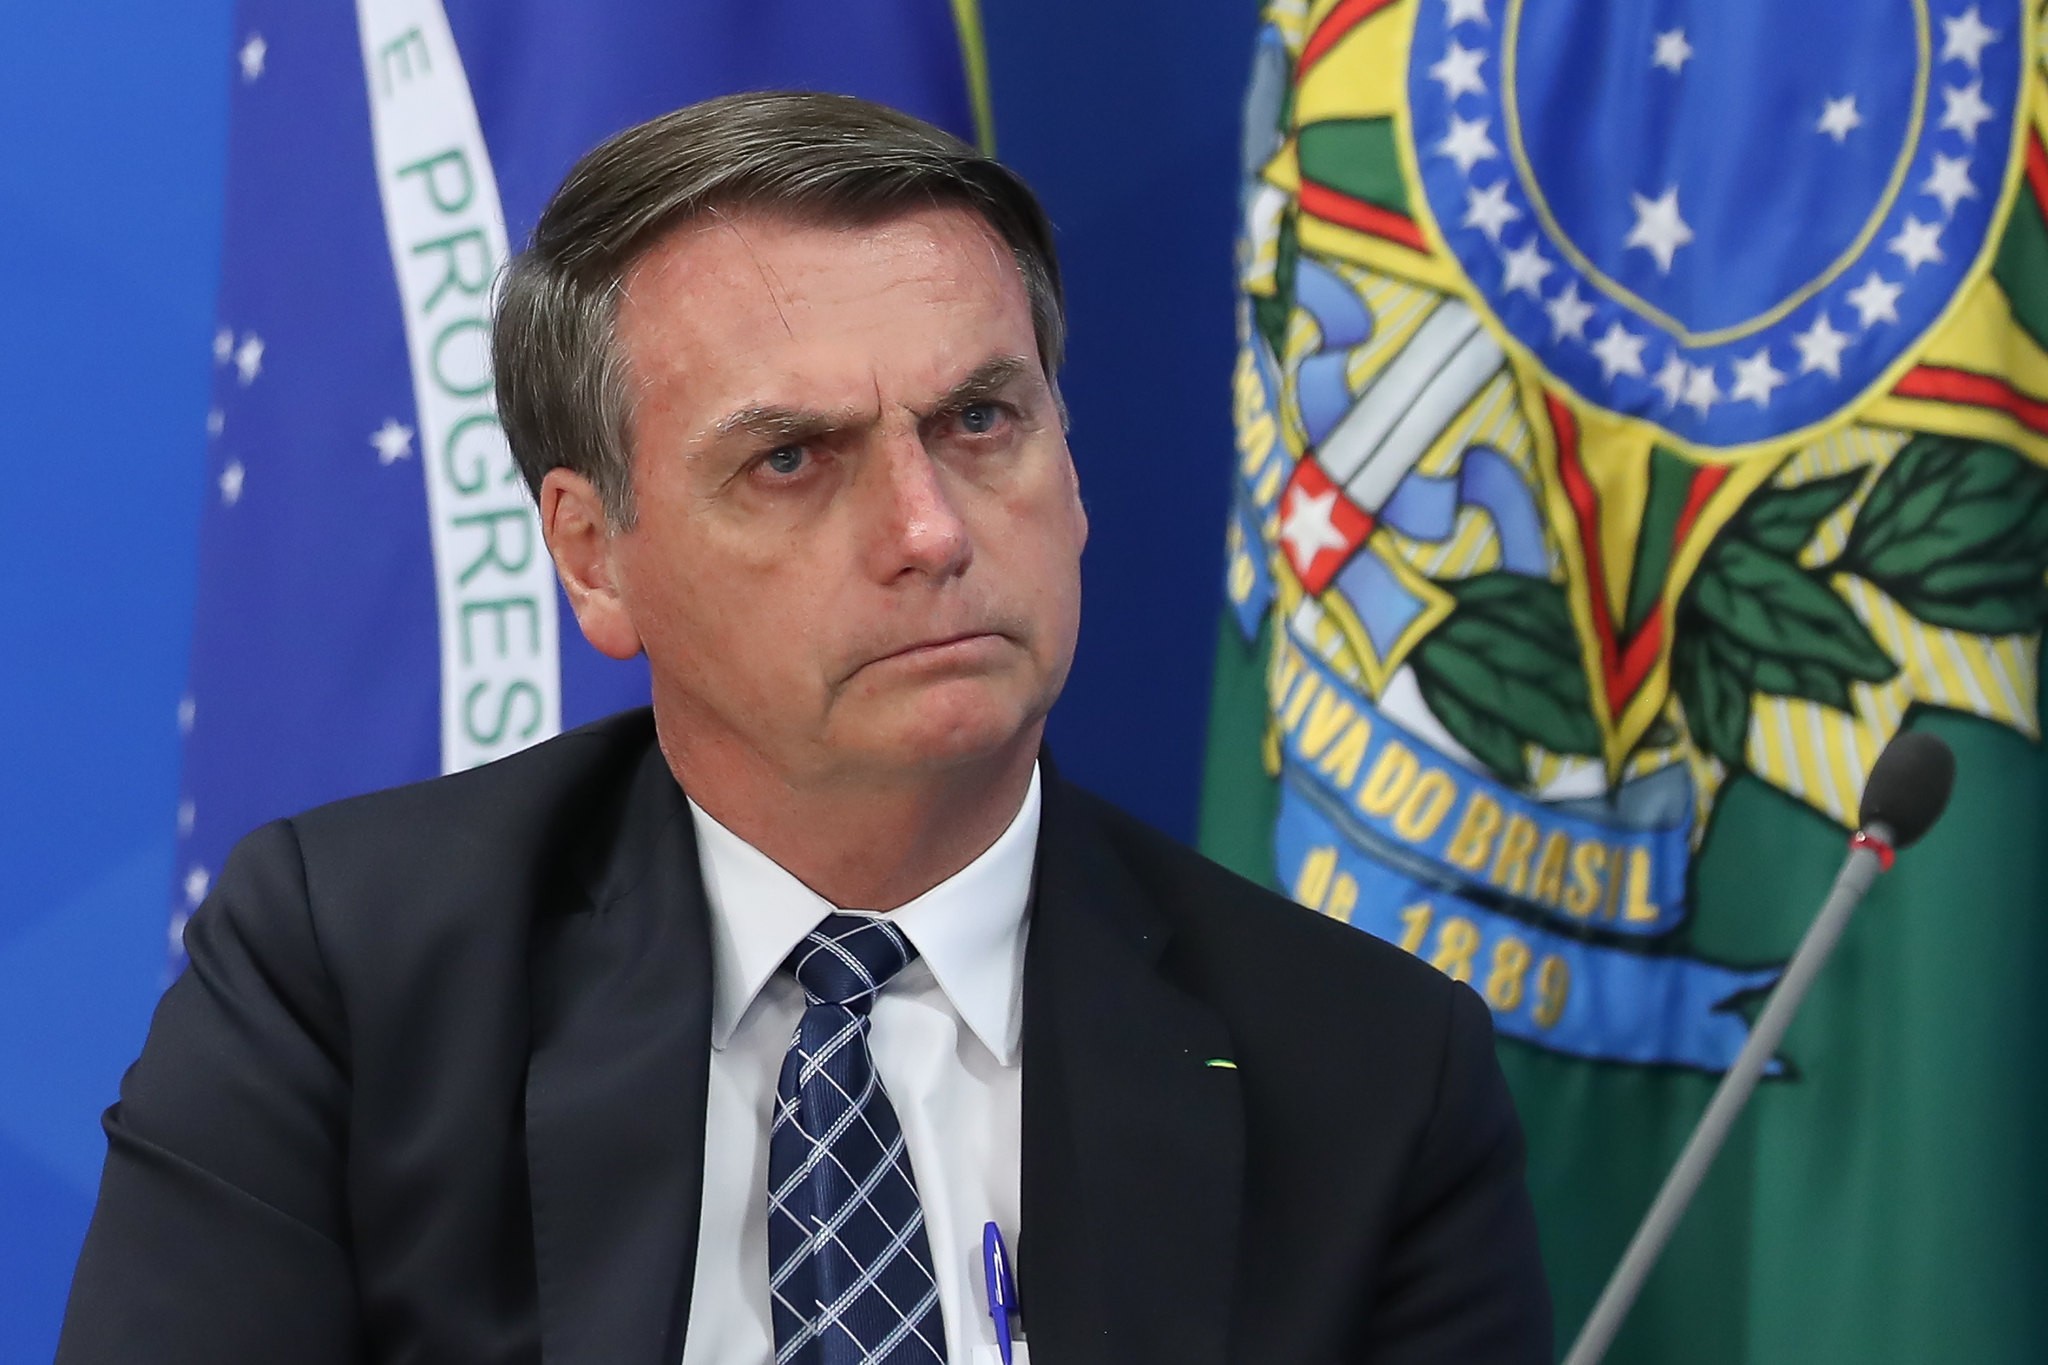 O presidente Jair Bolsonaro é alvo de críticas pela política ambiental de seu governo (Foto: Marcos Corrêa/PR/Flick/Palácio do Planalto/Creative Commons)